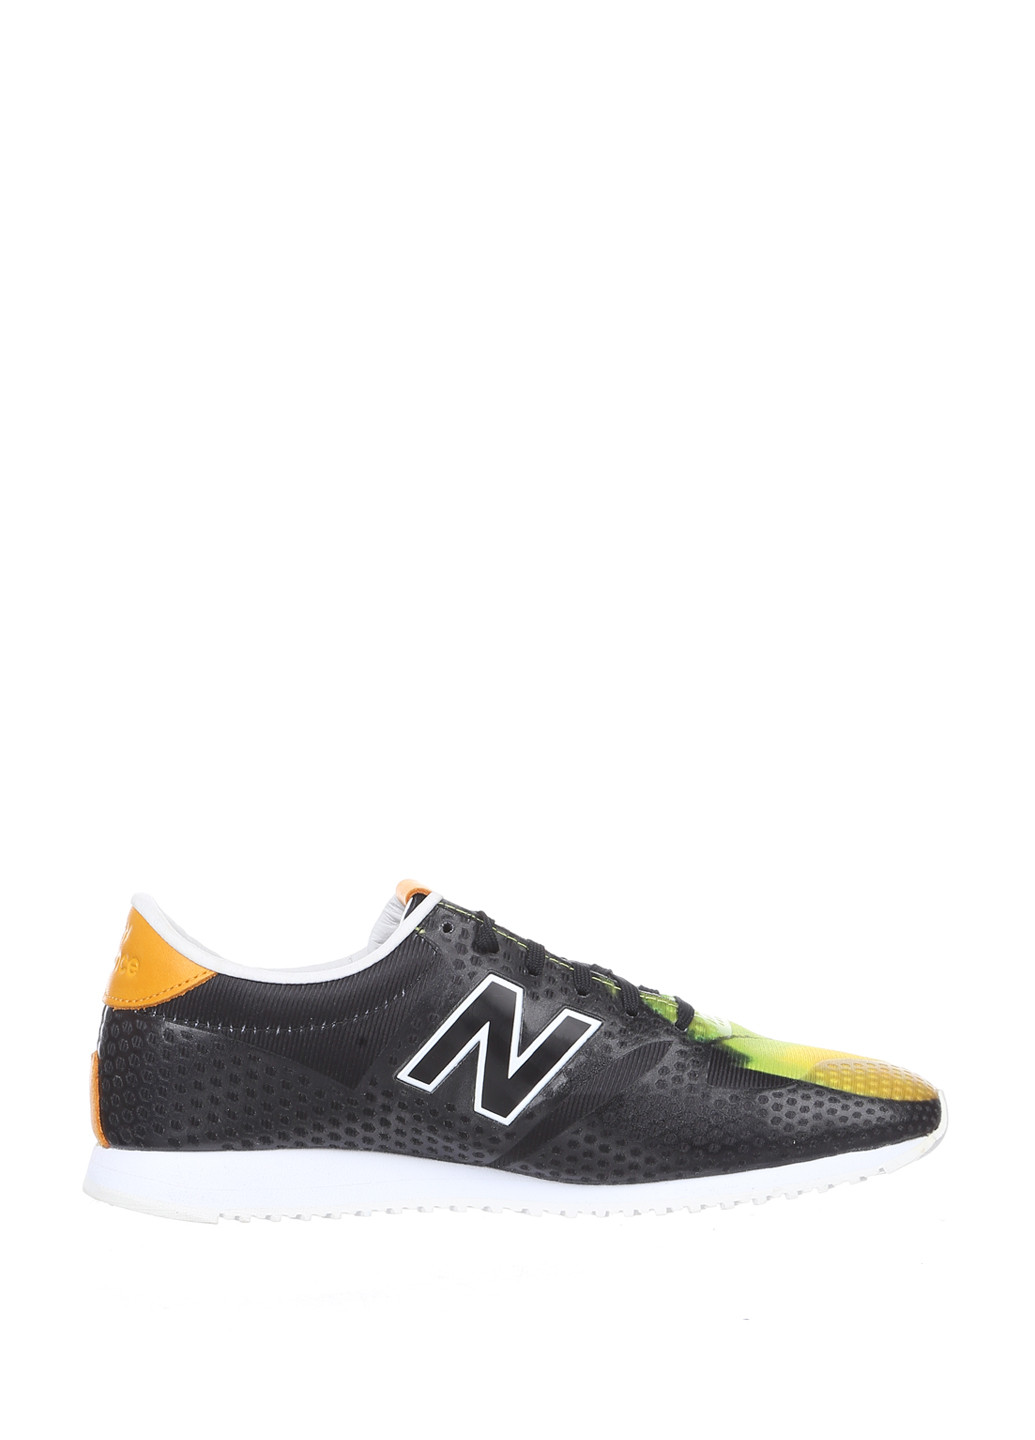 Цветные демисезонные кроссовки New Balance